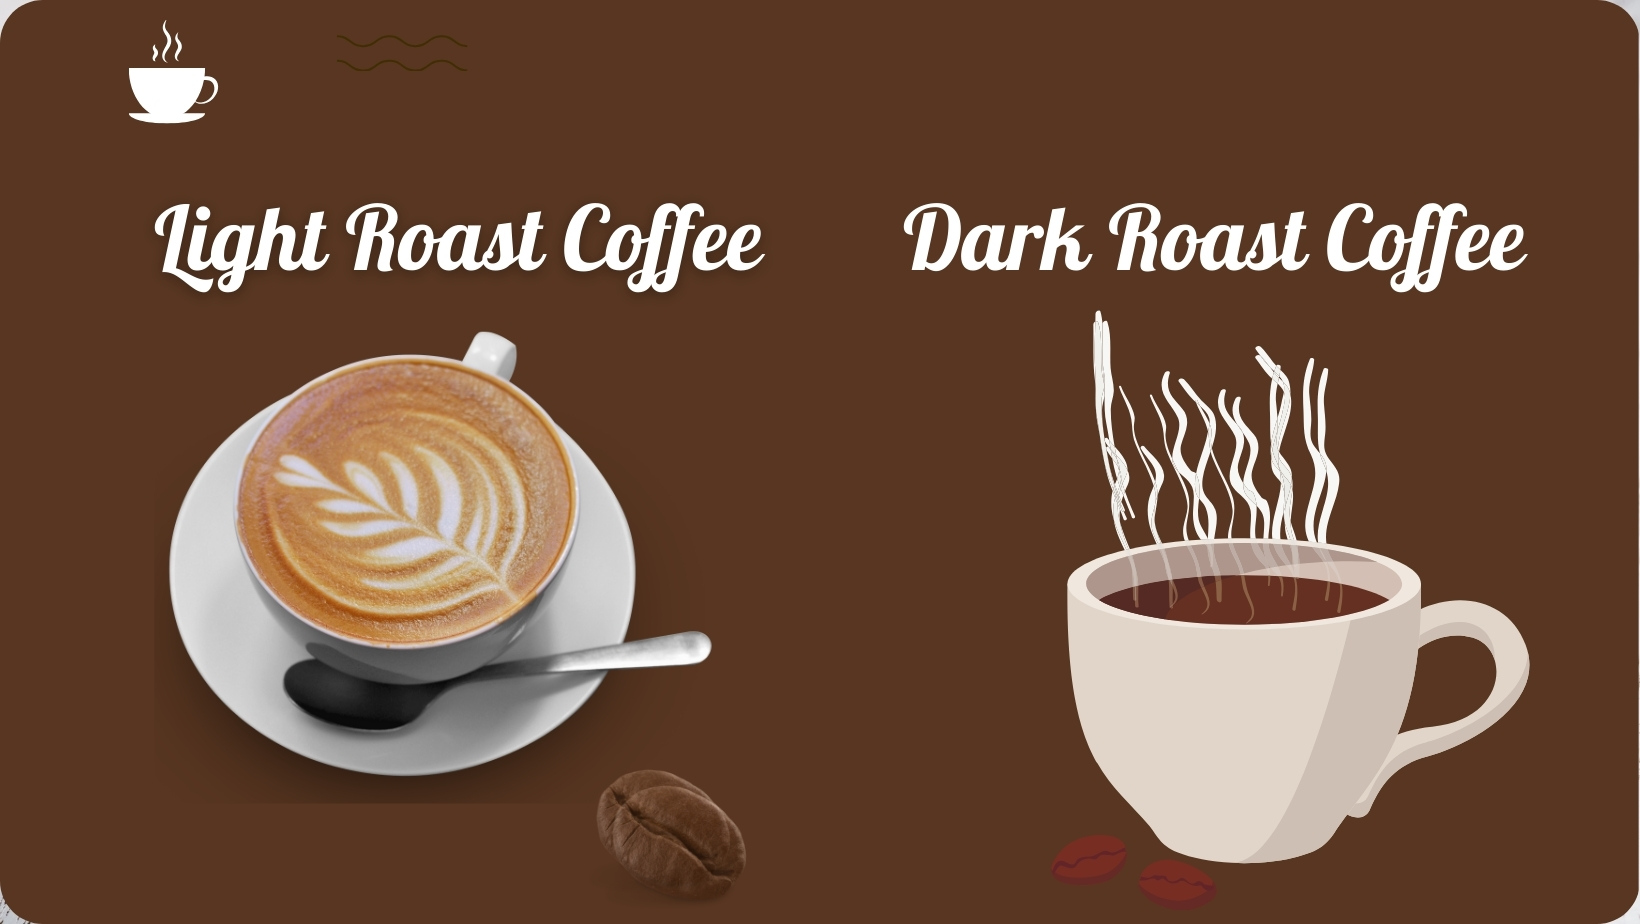 Light Roast Coffee Vs. Dark Roast Coffee